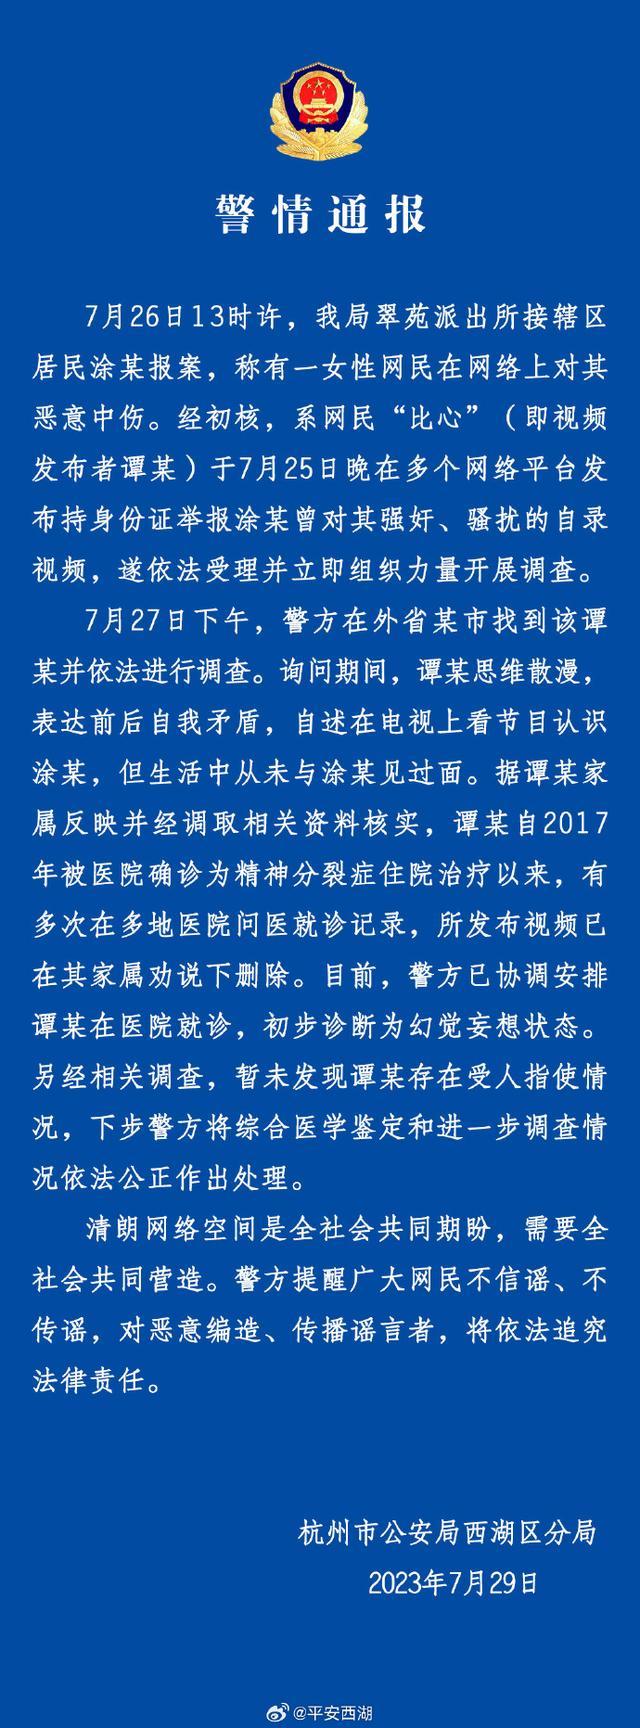 杭州警方回应一女子造谣 初步诊断为幻觉妄想状态